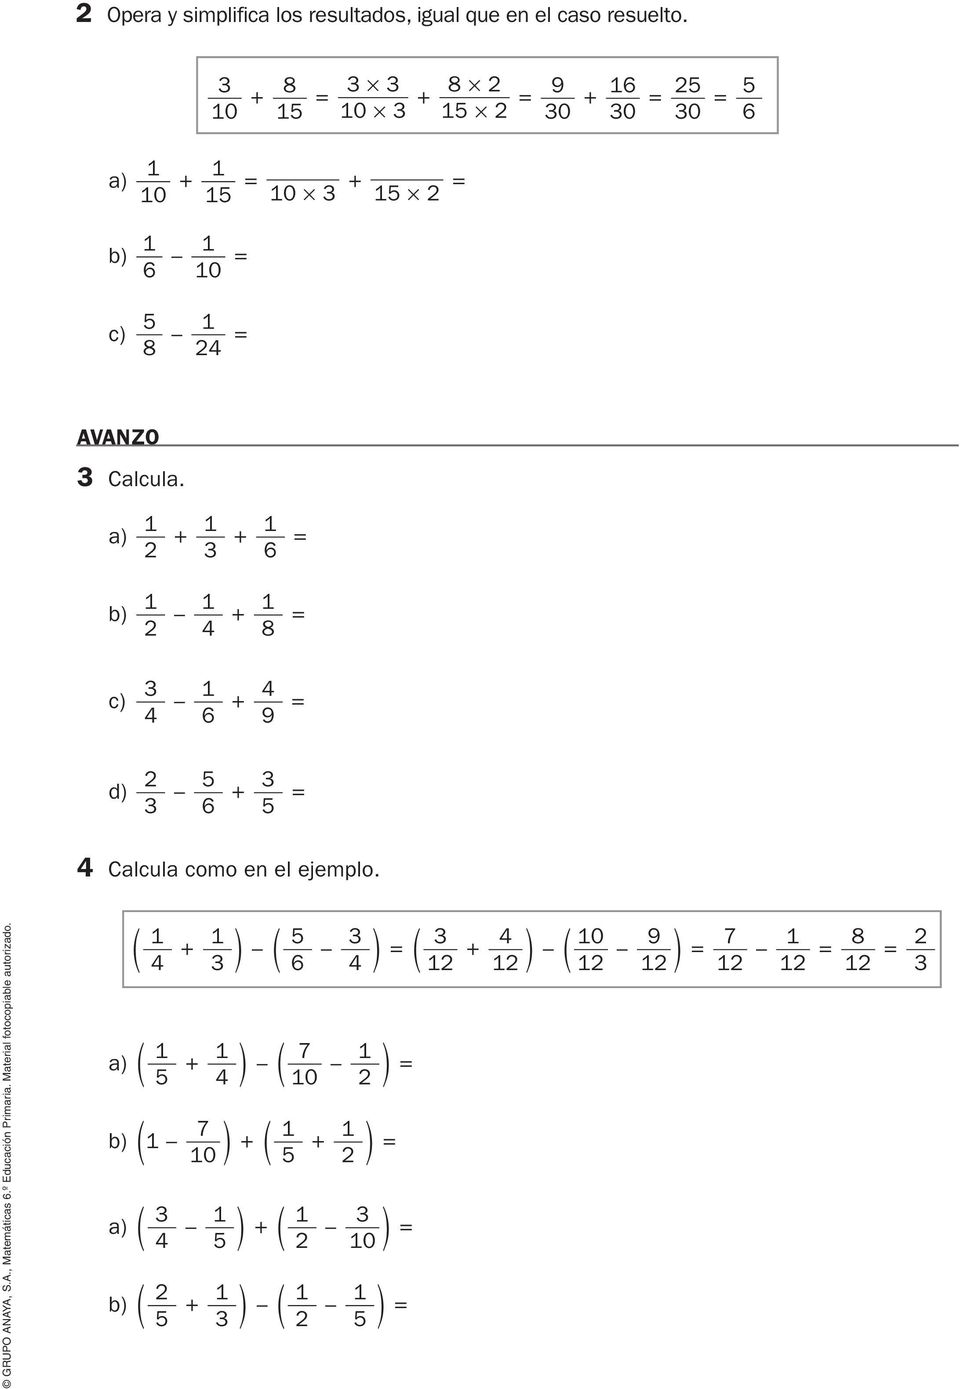 AVANZO Calcula. a) + + 2 6 = b) + 2 4 8 = c) 4 + 4 6 9 = 2 5 d) + = 6 5 4 Calcula como en el ejemplo.